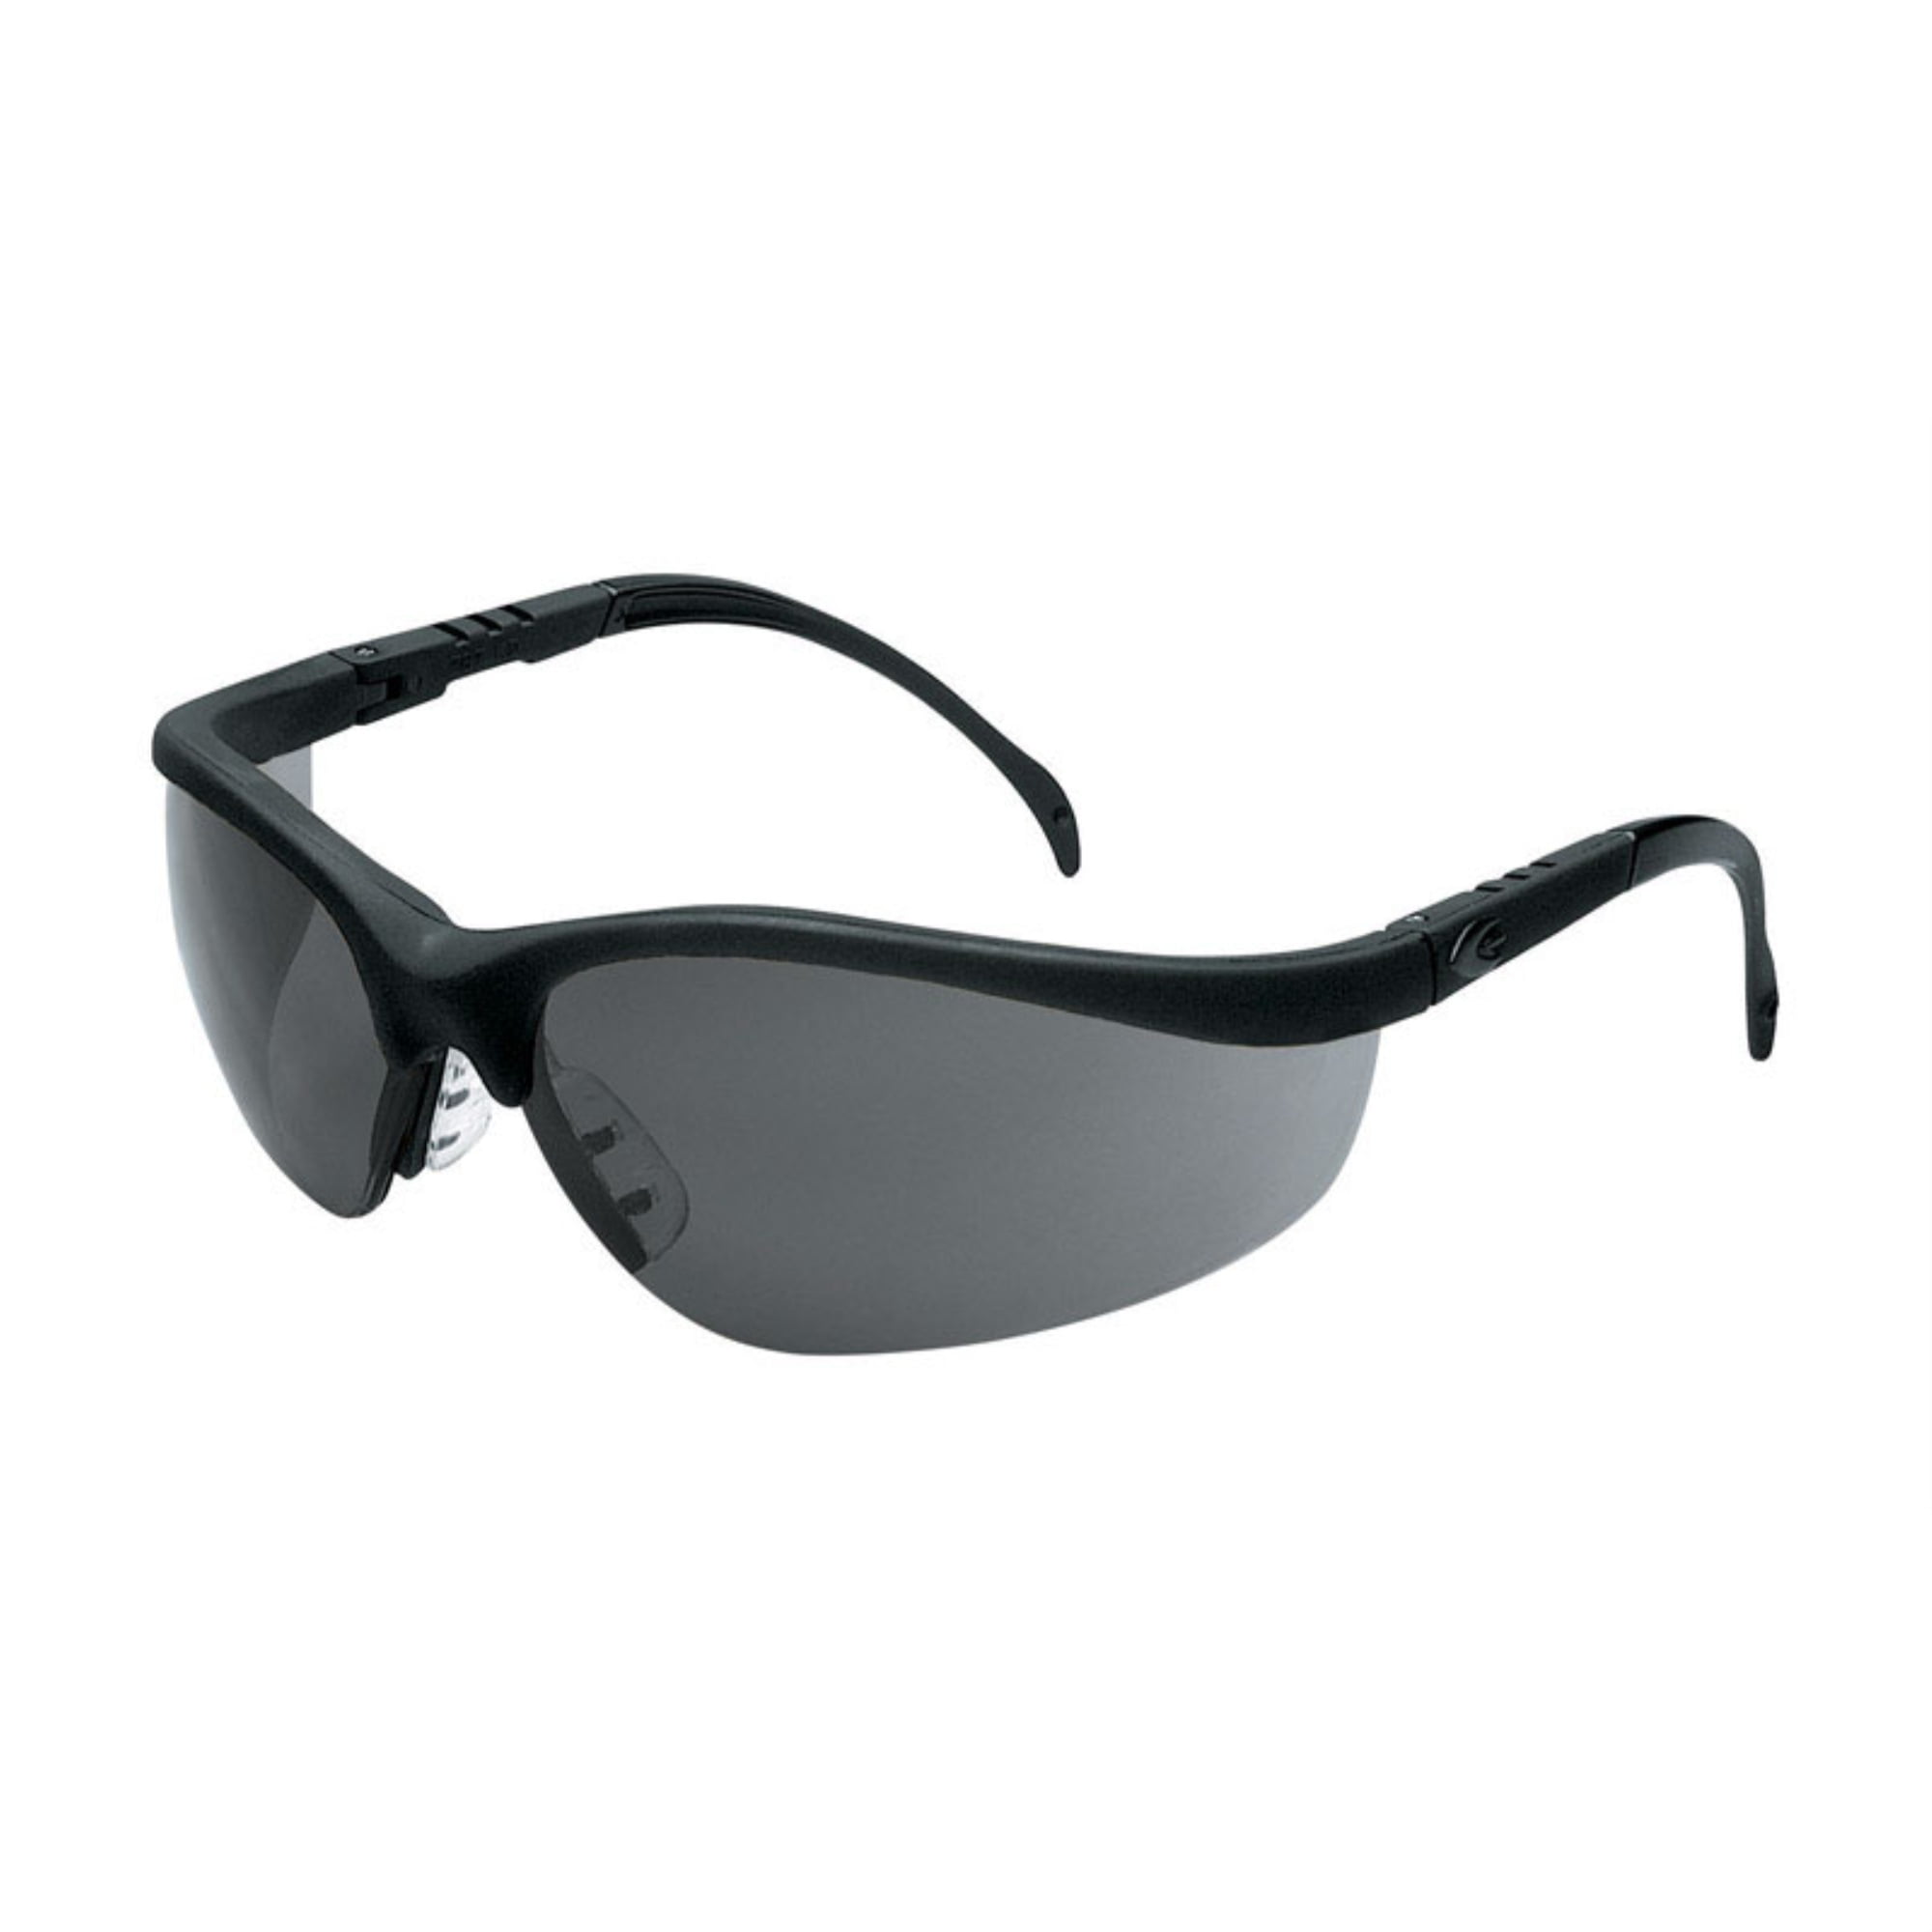 Mcr 2418085 Multi-purpose Safety Glasses Gray Lens With Black Frame , Gray Lens Frame - Pack Of 12